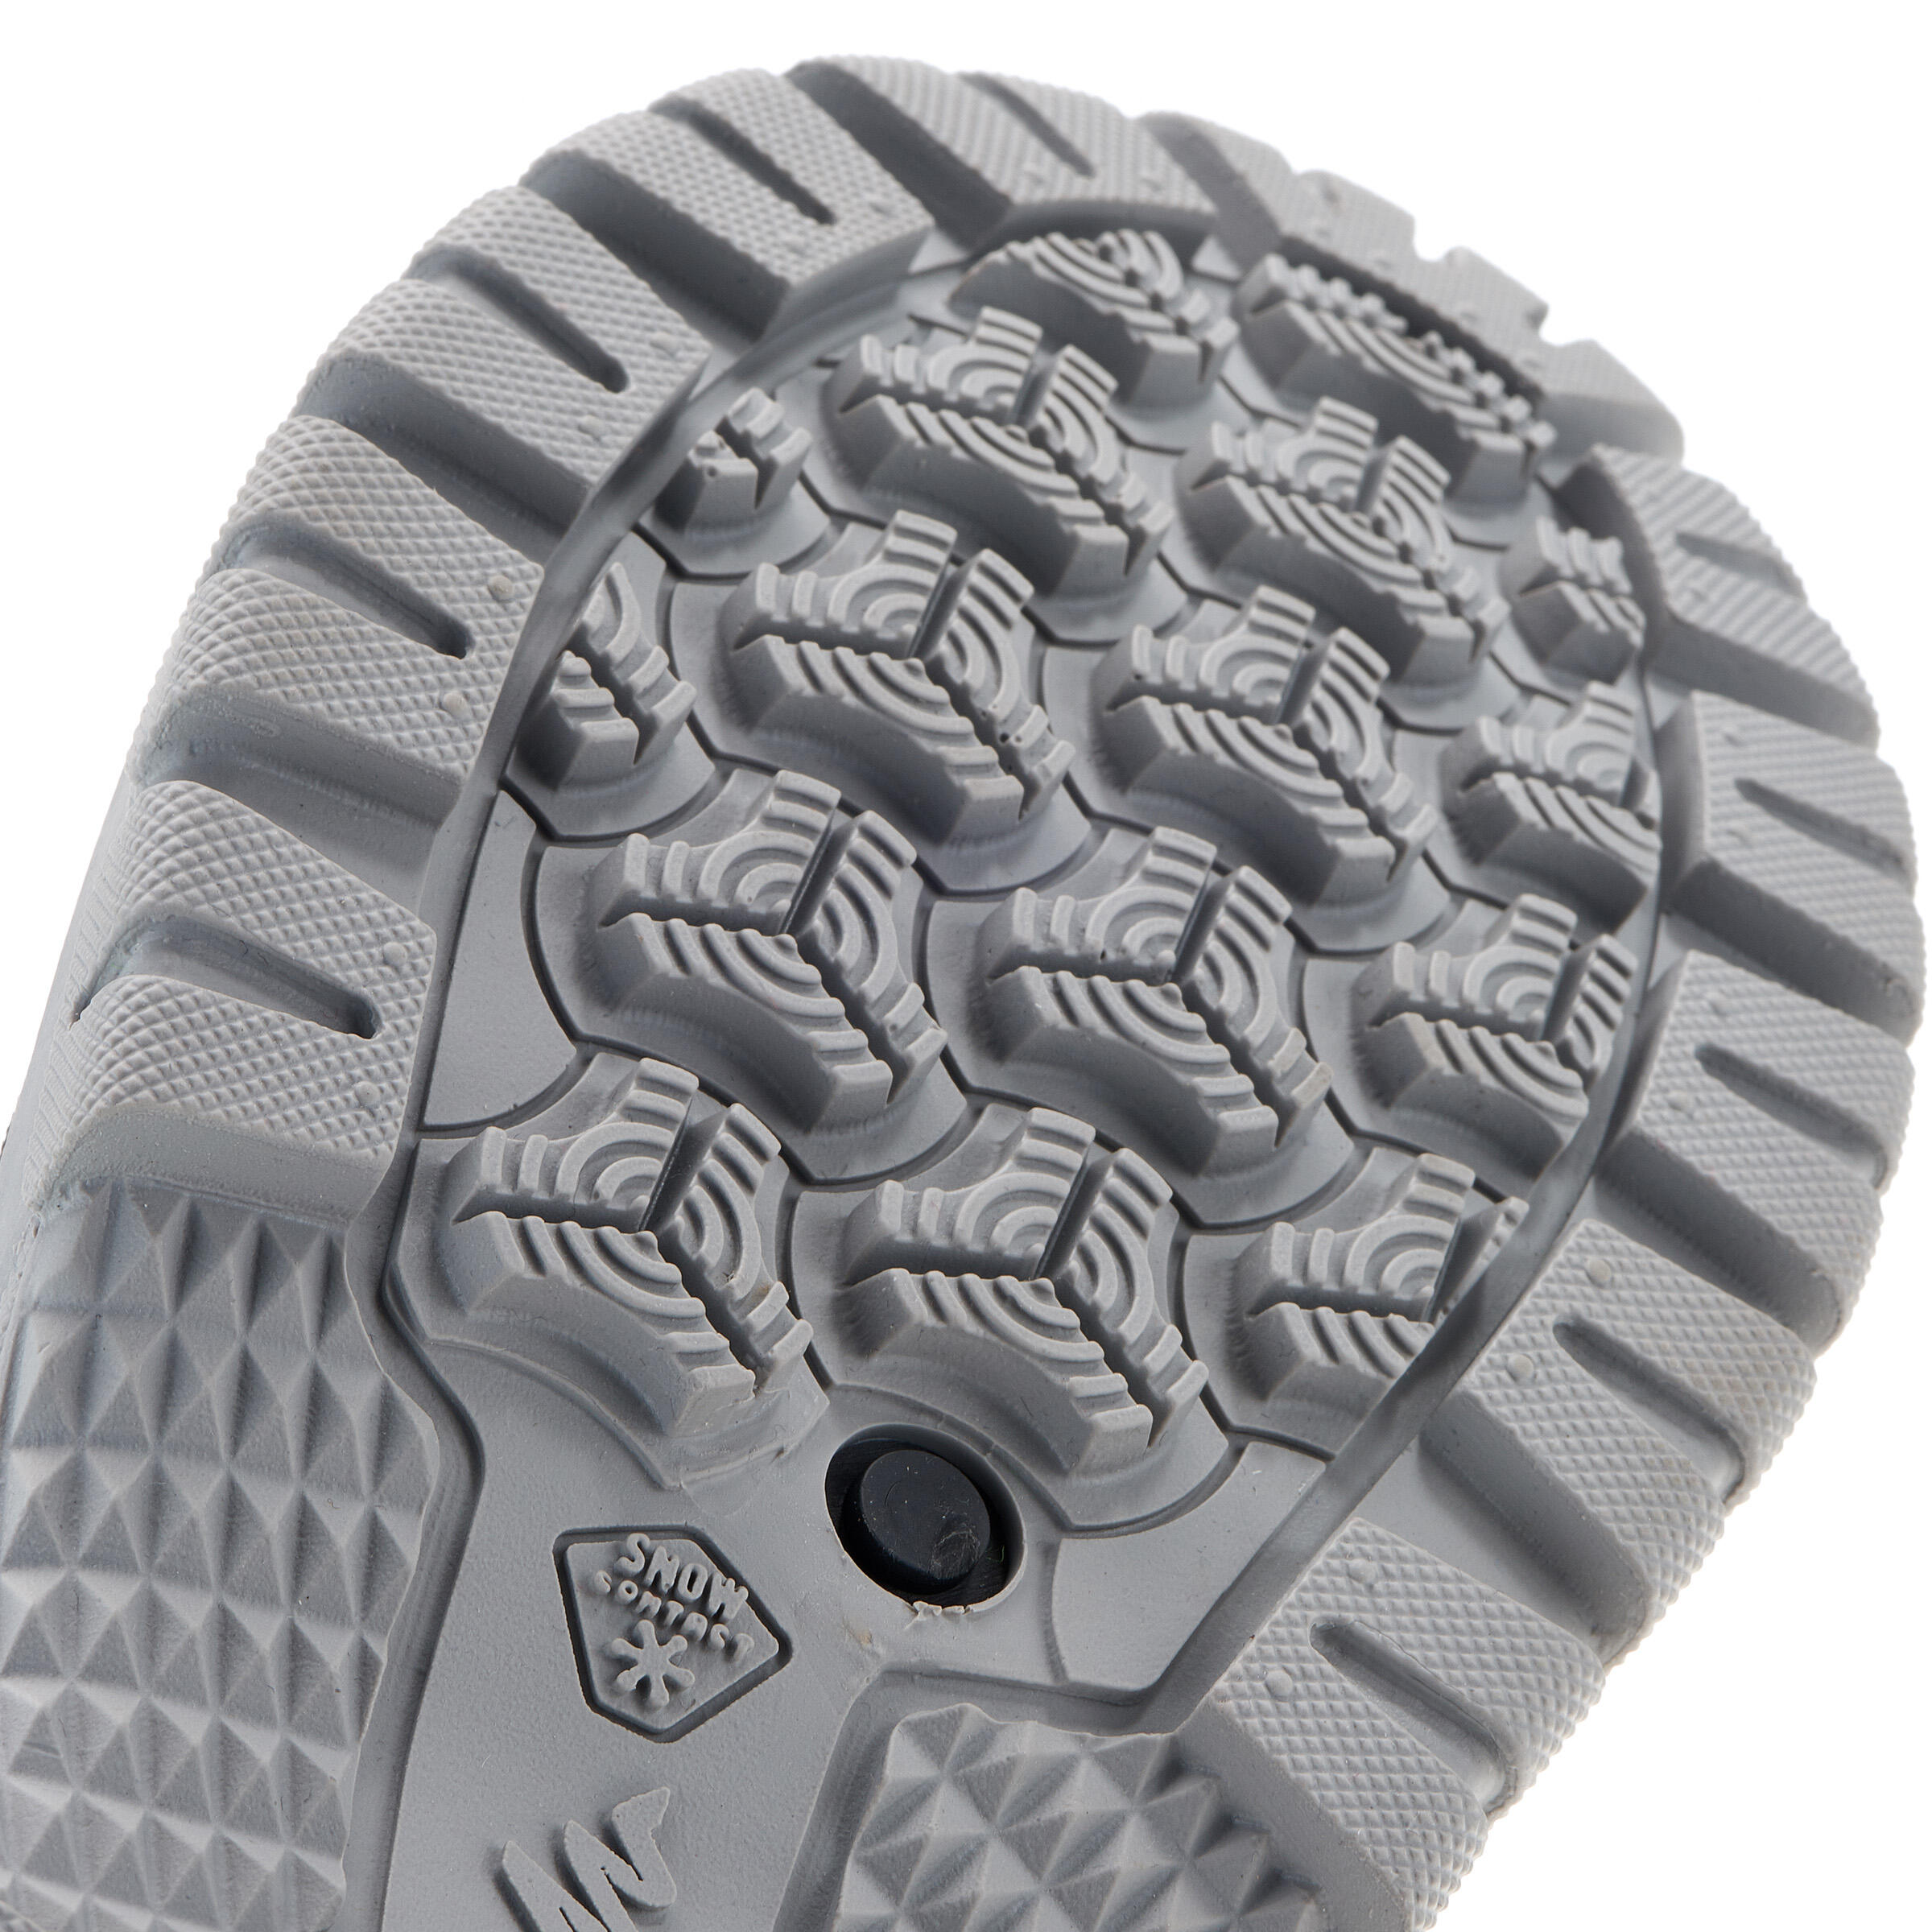 Arpenaz 50 Warm waterproof men's hiking boots - Grey 10/14